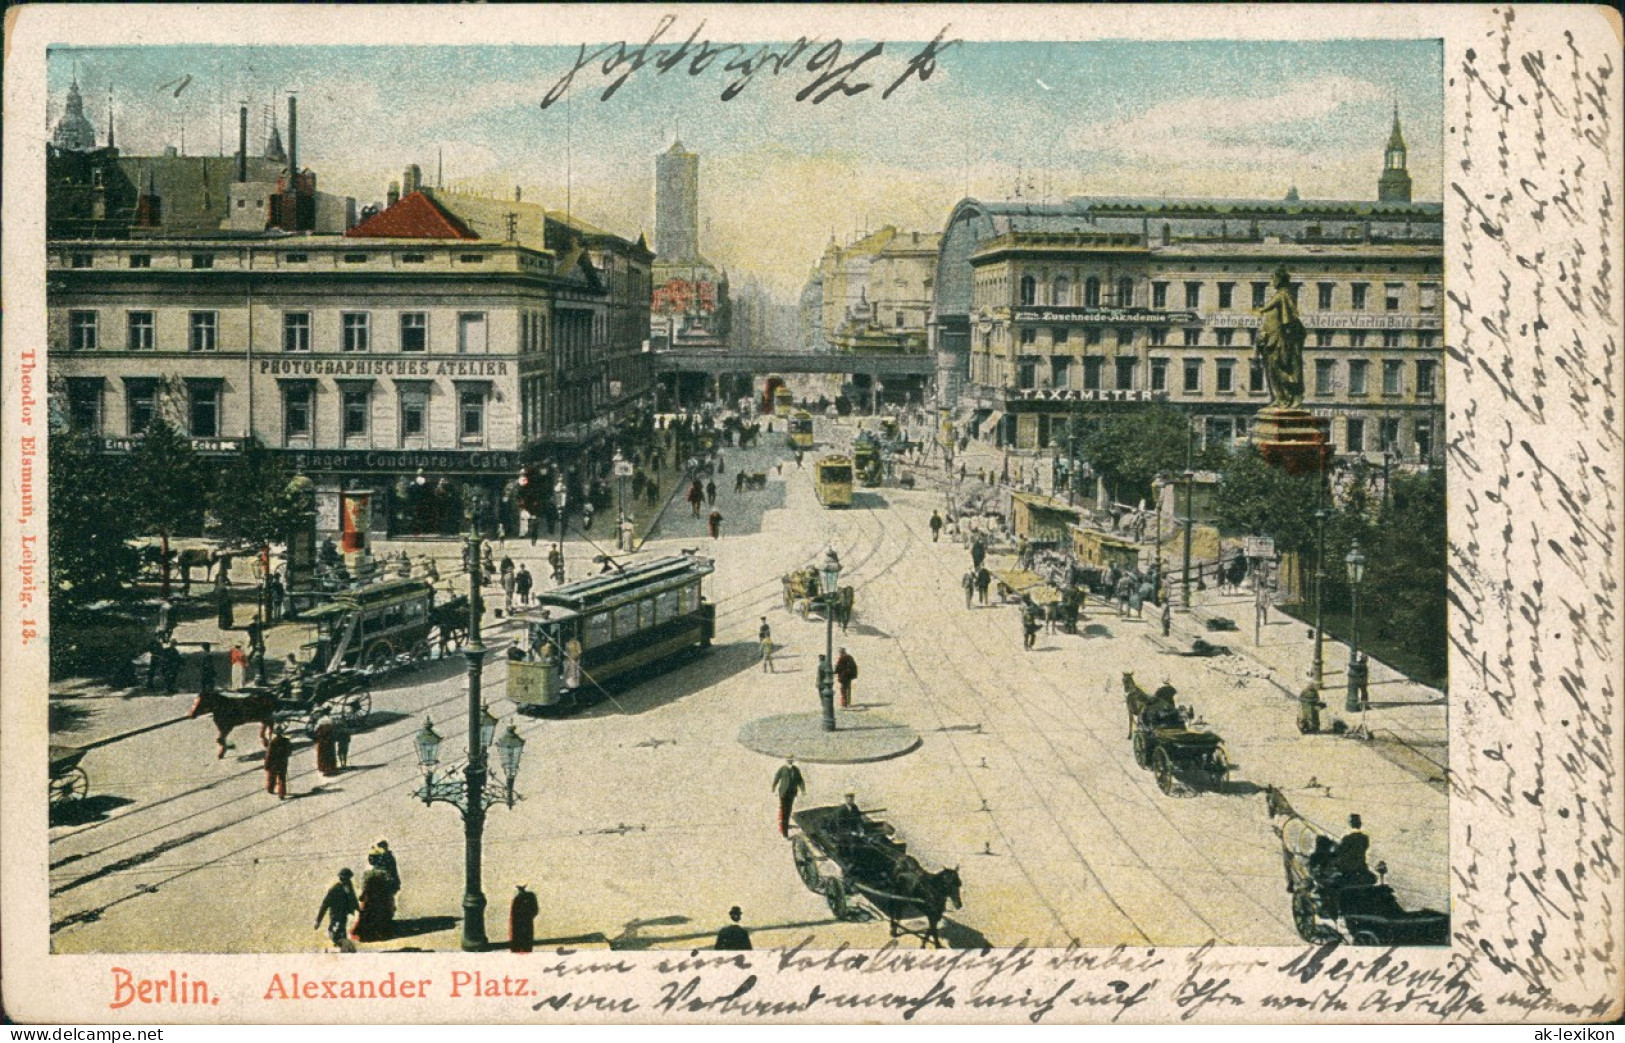 Ansichtskarte Mitte-Berlin Alexanderplatz - Stzraßenbahn 1905 - Mitte